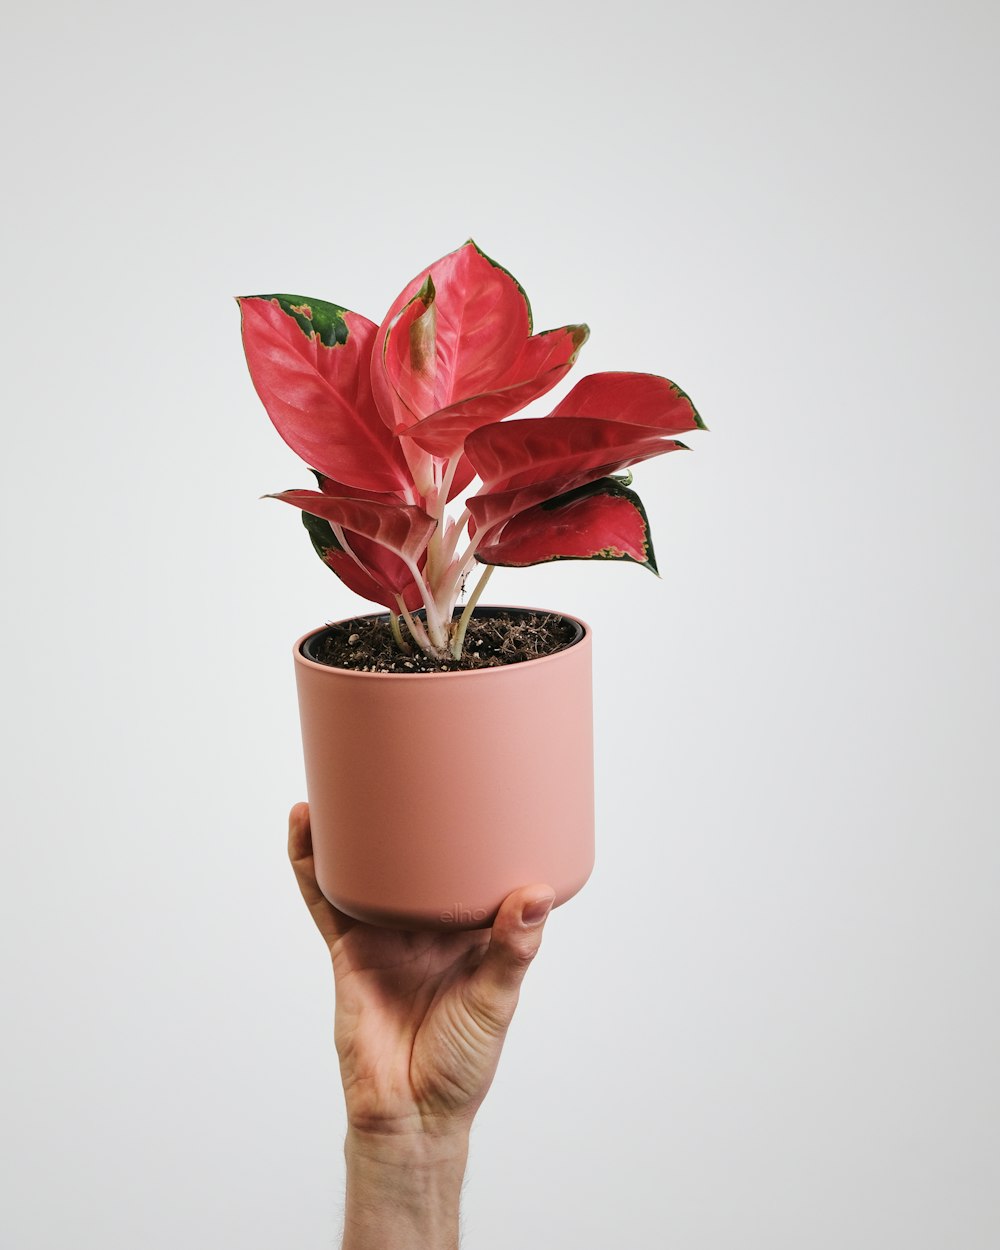 una mano sosteniendo una planta en maceta con flores rojas